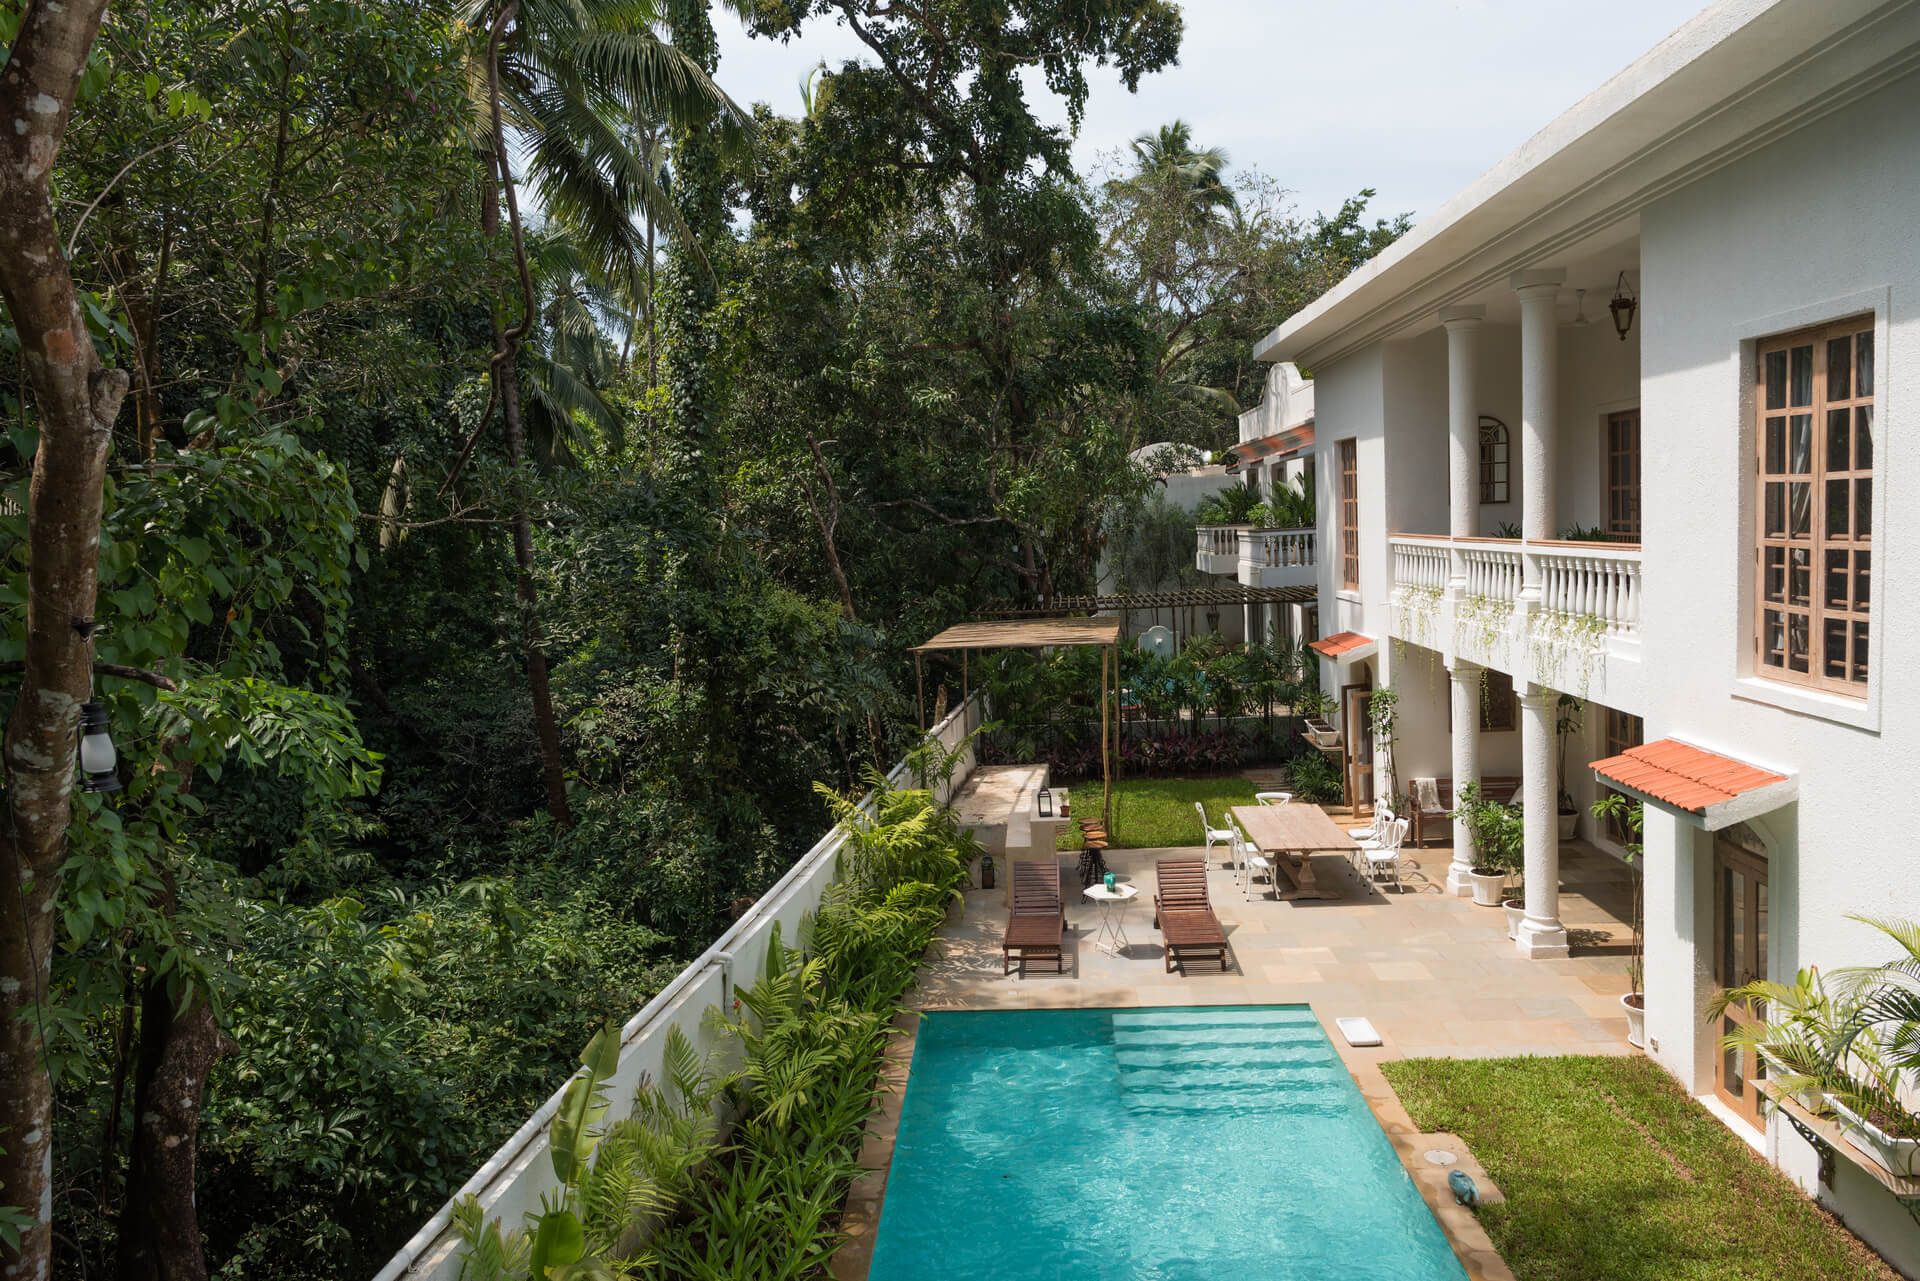 Sanitised pool villa for rent in Goa - Igreha Villa D